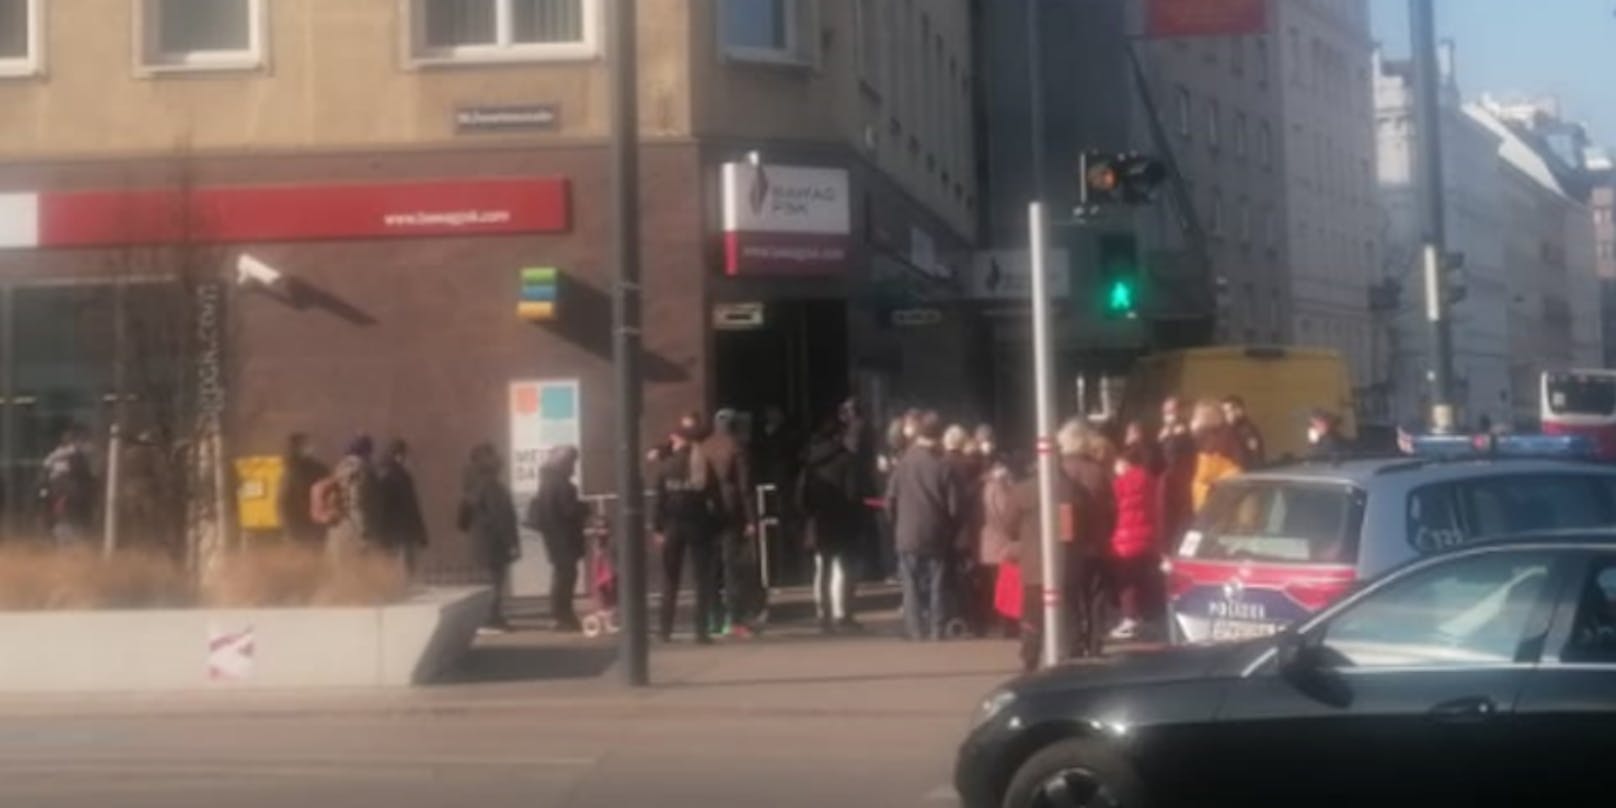 Wiener stürmen Bankfiliale, Polizei greift ein